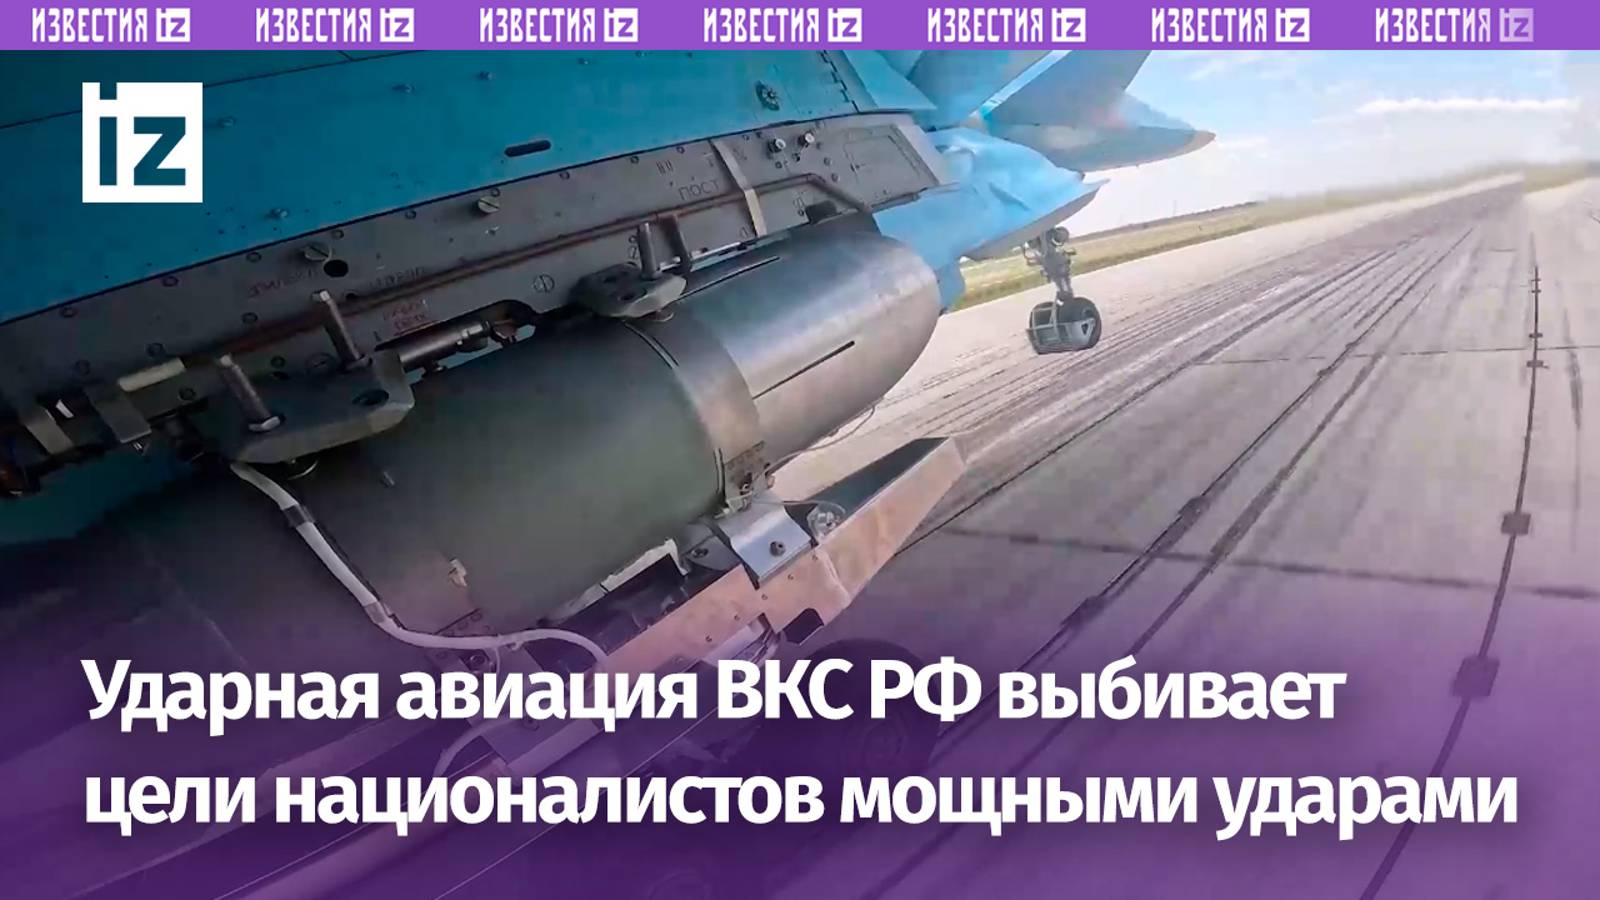 «Враг бежит, боится»: экипажи истребителей-бомбардировщиков Су-34 ВКС РФ нанесли удар по целям ВСУ